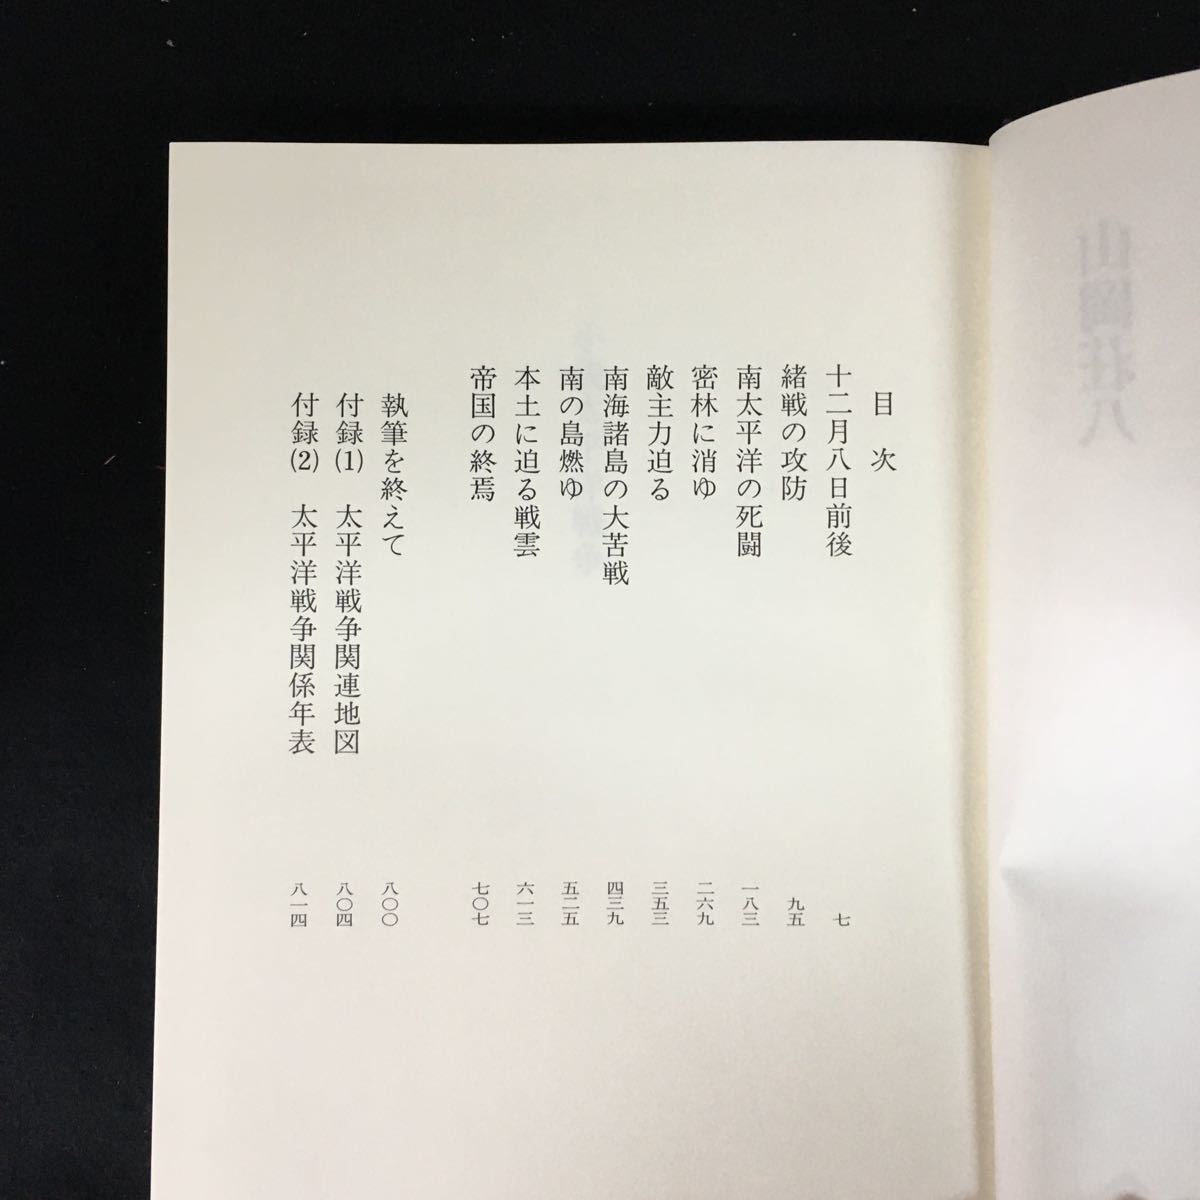 e-305 коллекционное издание повесть futoshi flat . война автор / Yamaoka Sohachi акционерное общество .. фирма 1994 год no. 1. выпуск *12